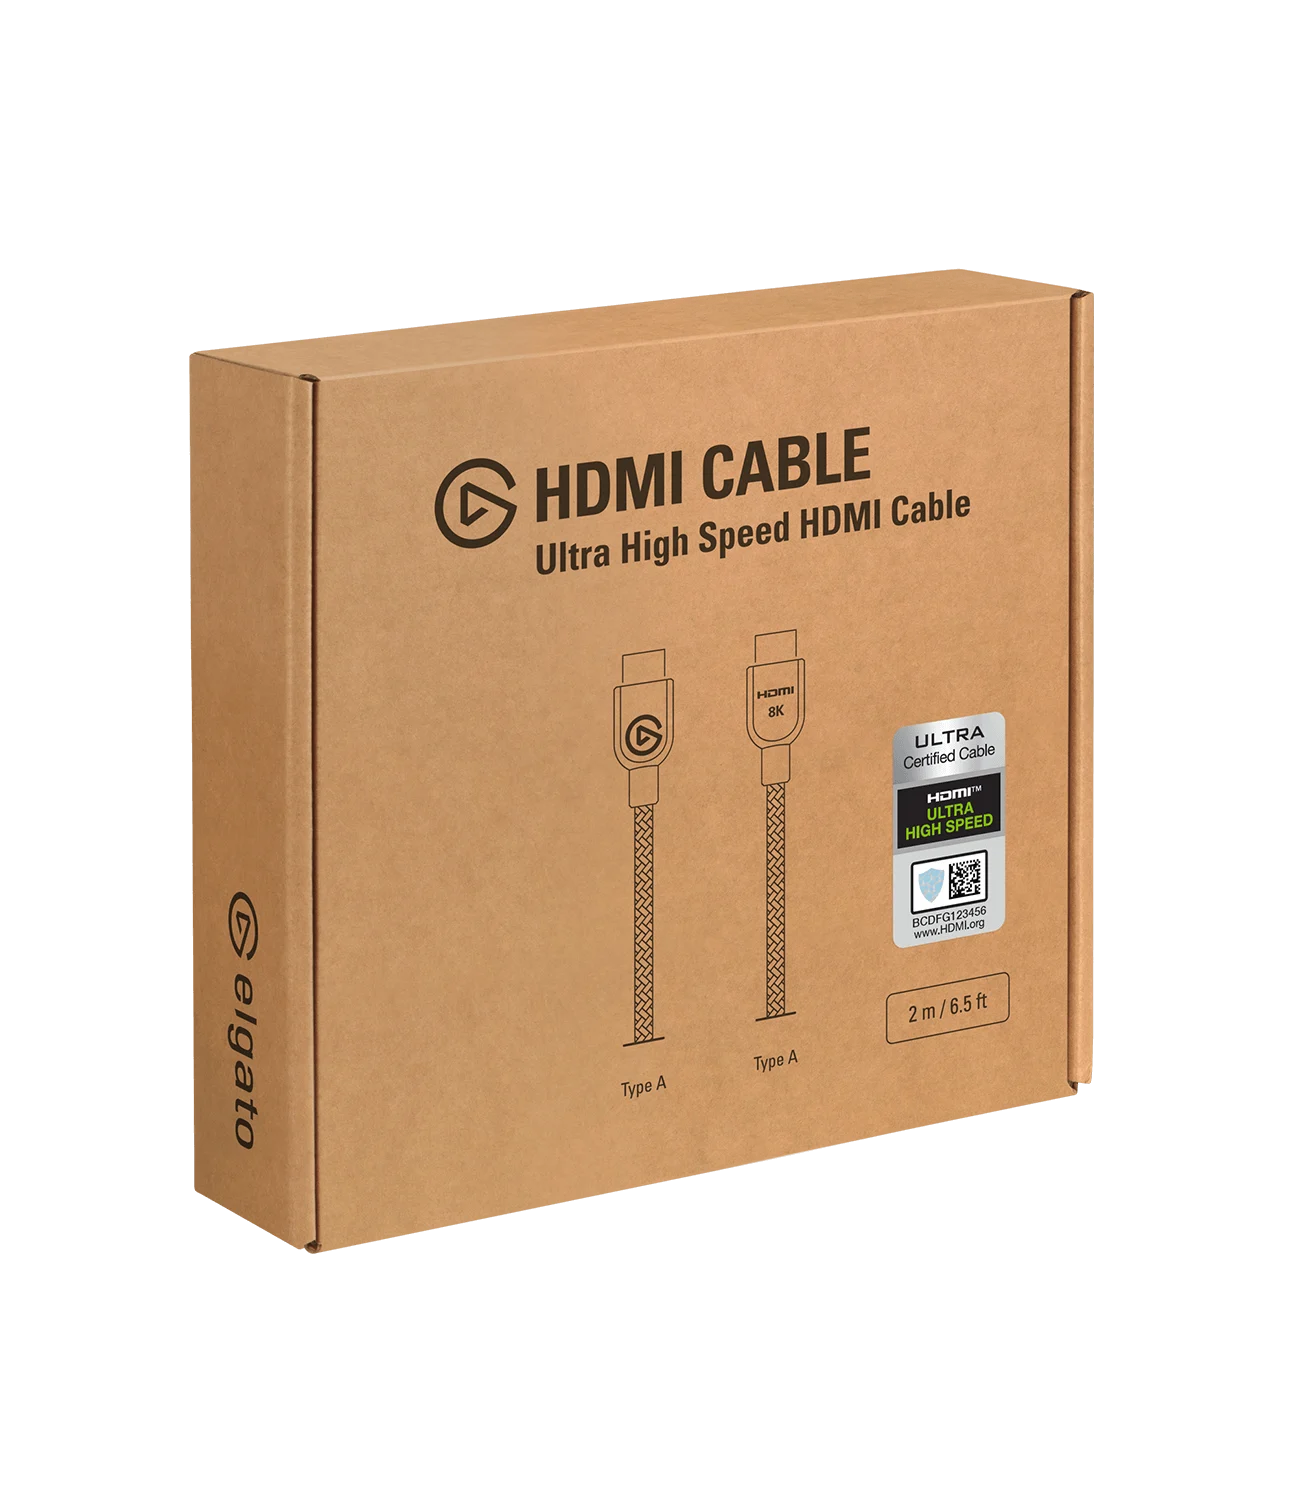 HDMI Cable box